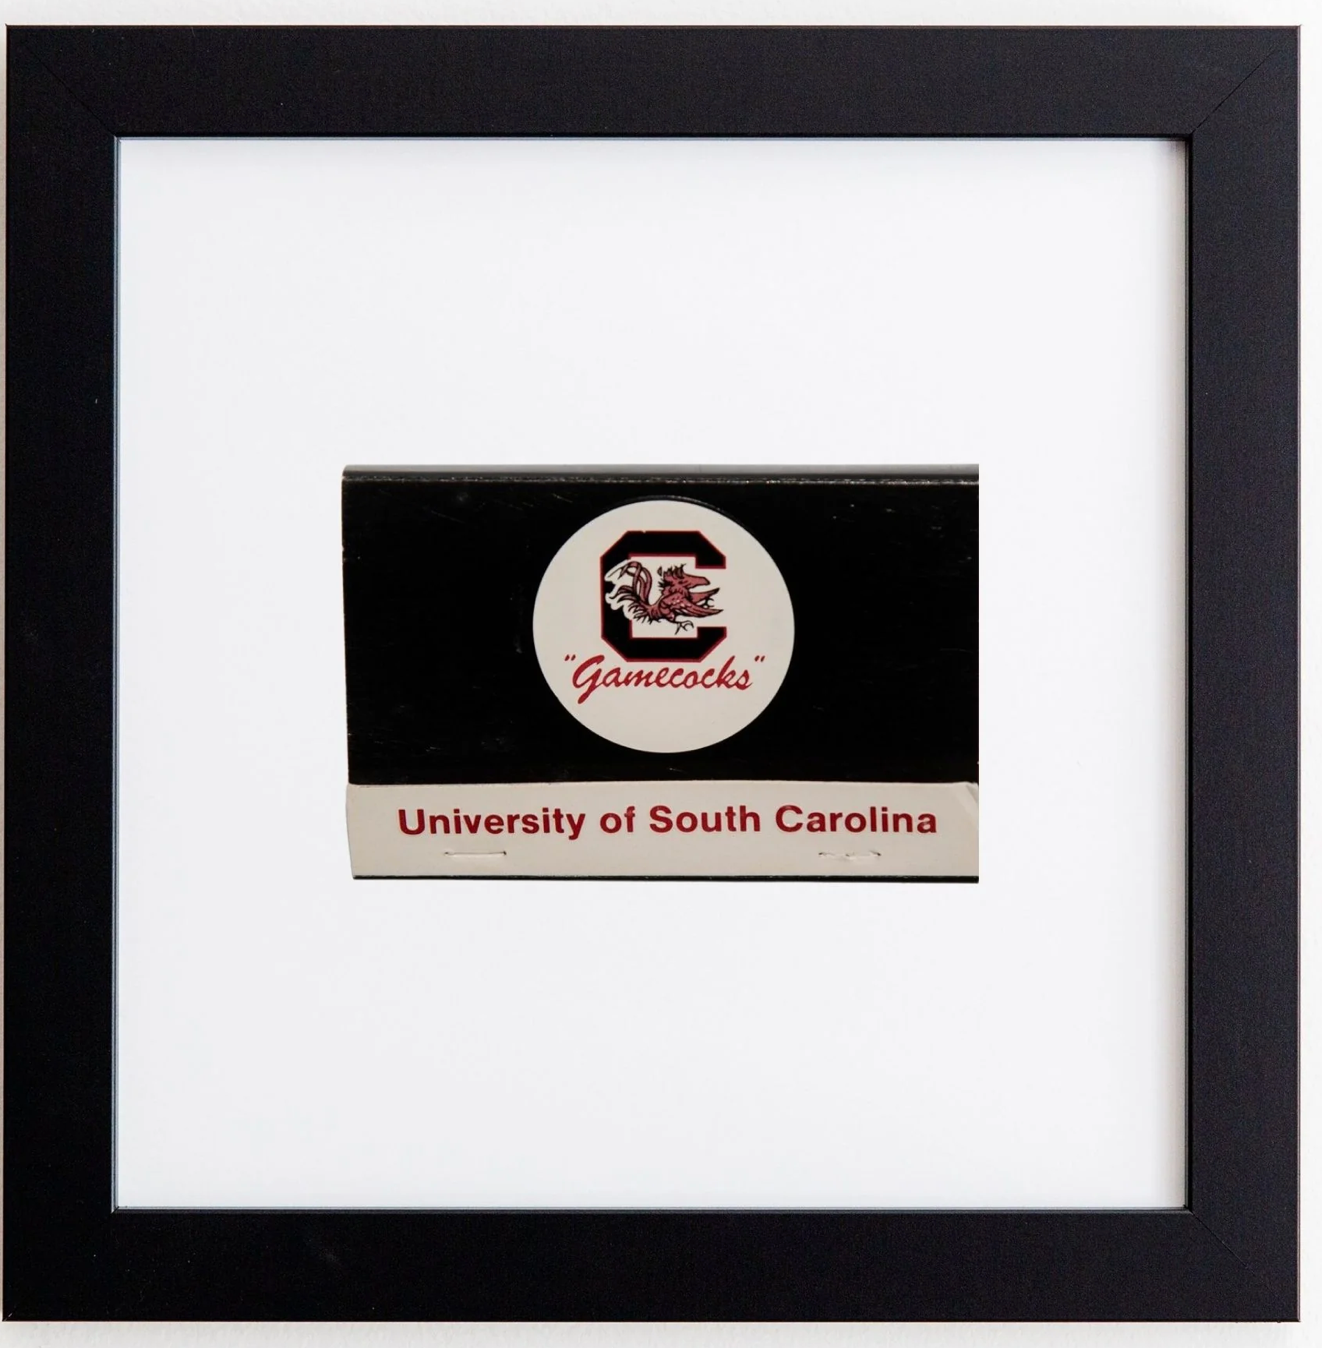 University of South Carolina Matchbook Print - Black Frame